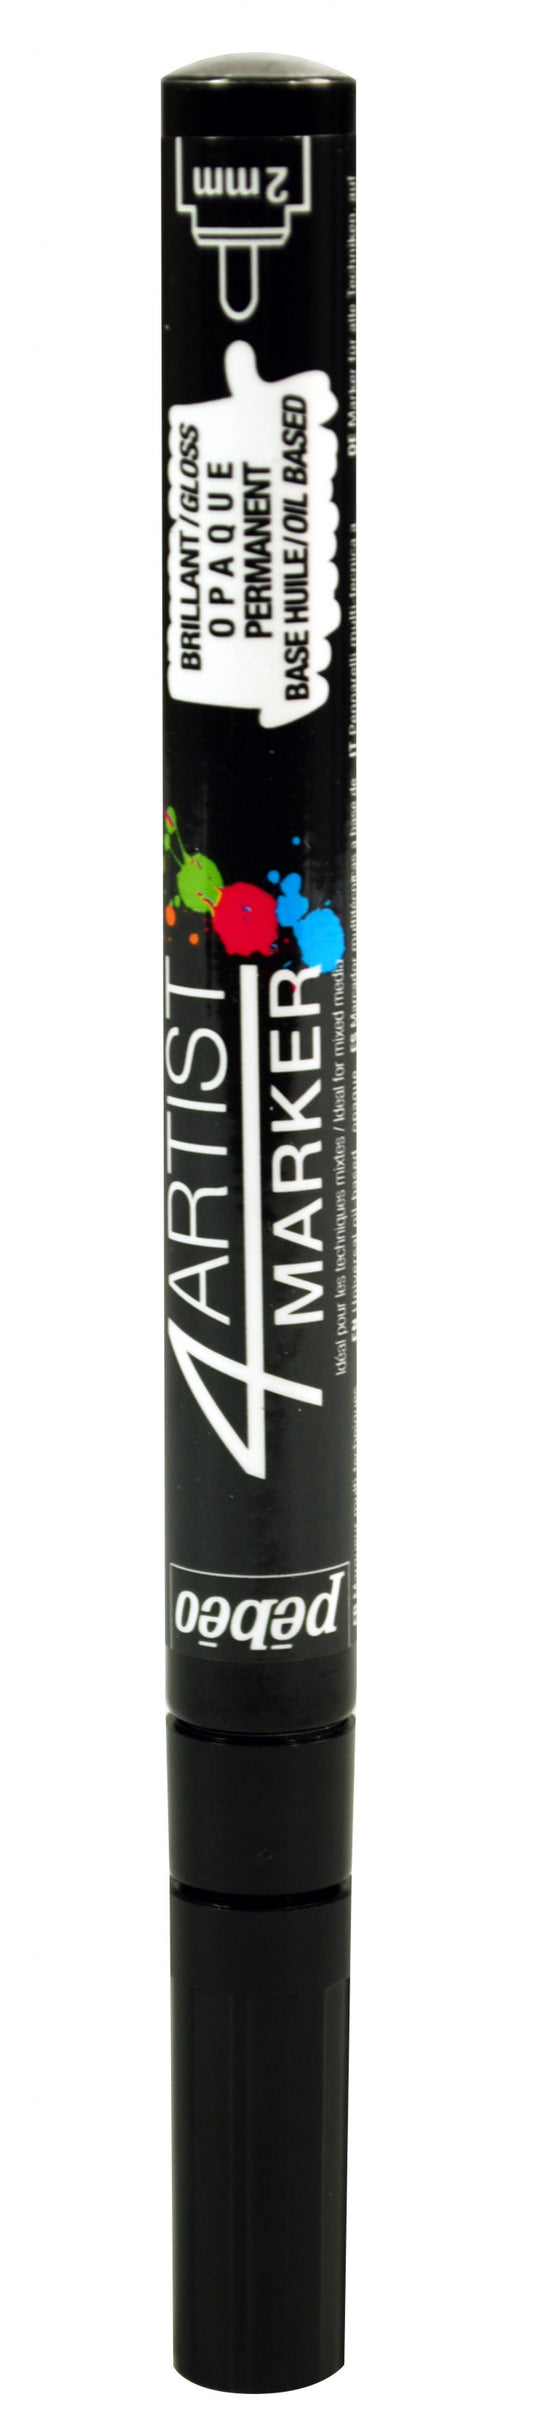 4Artist marker tip 2mm Black